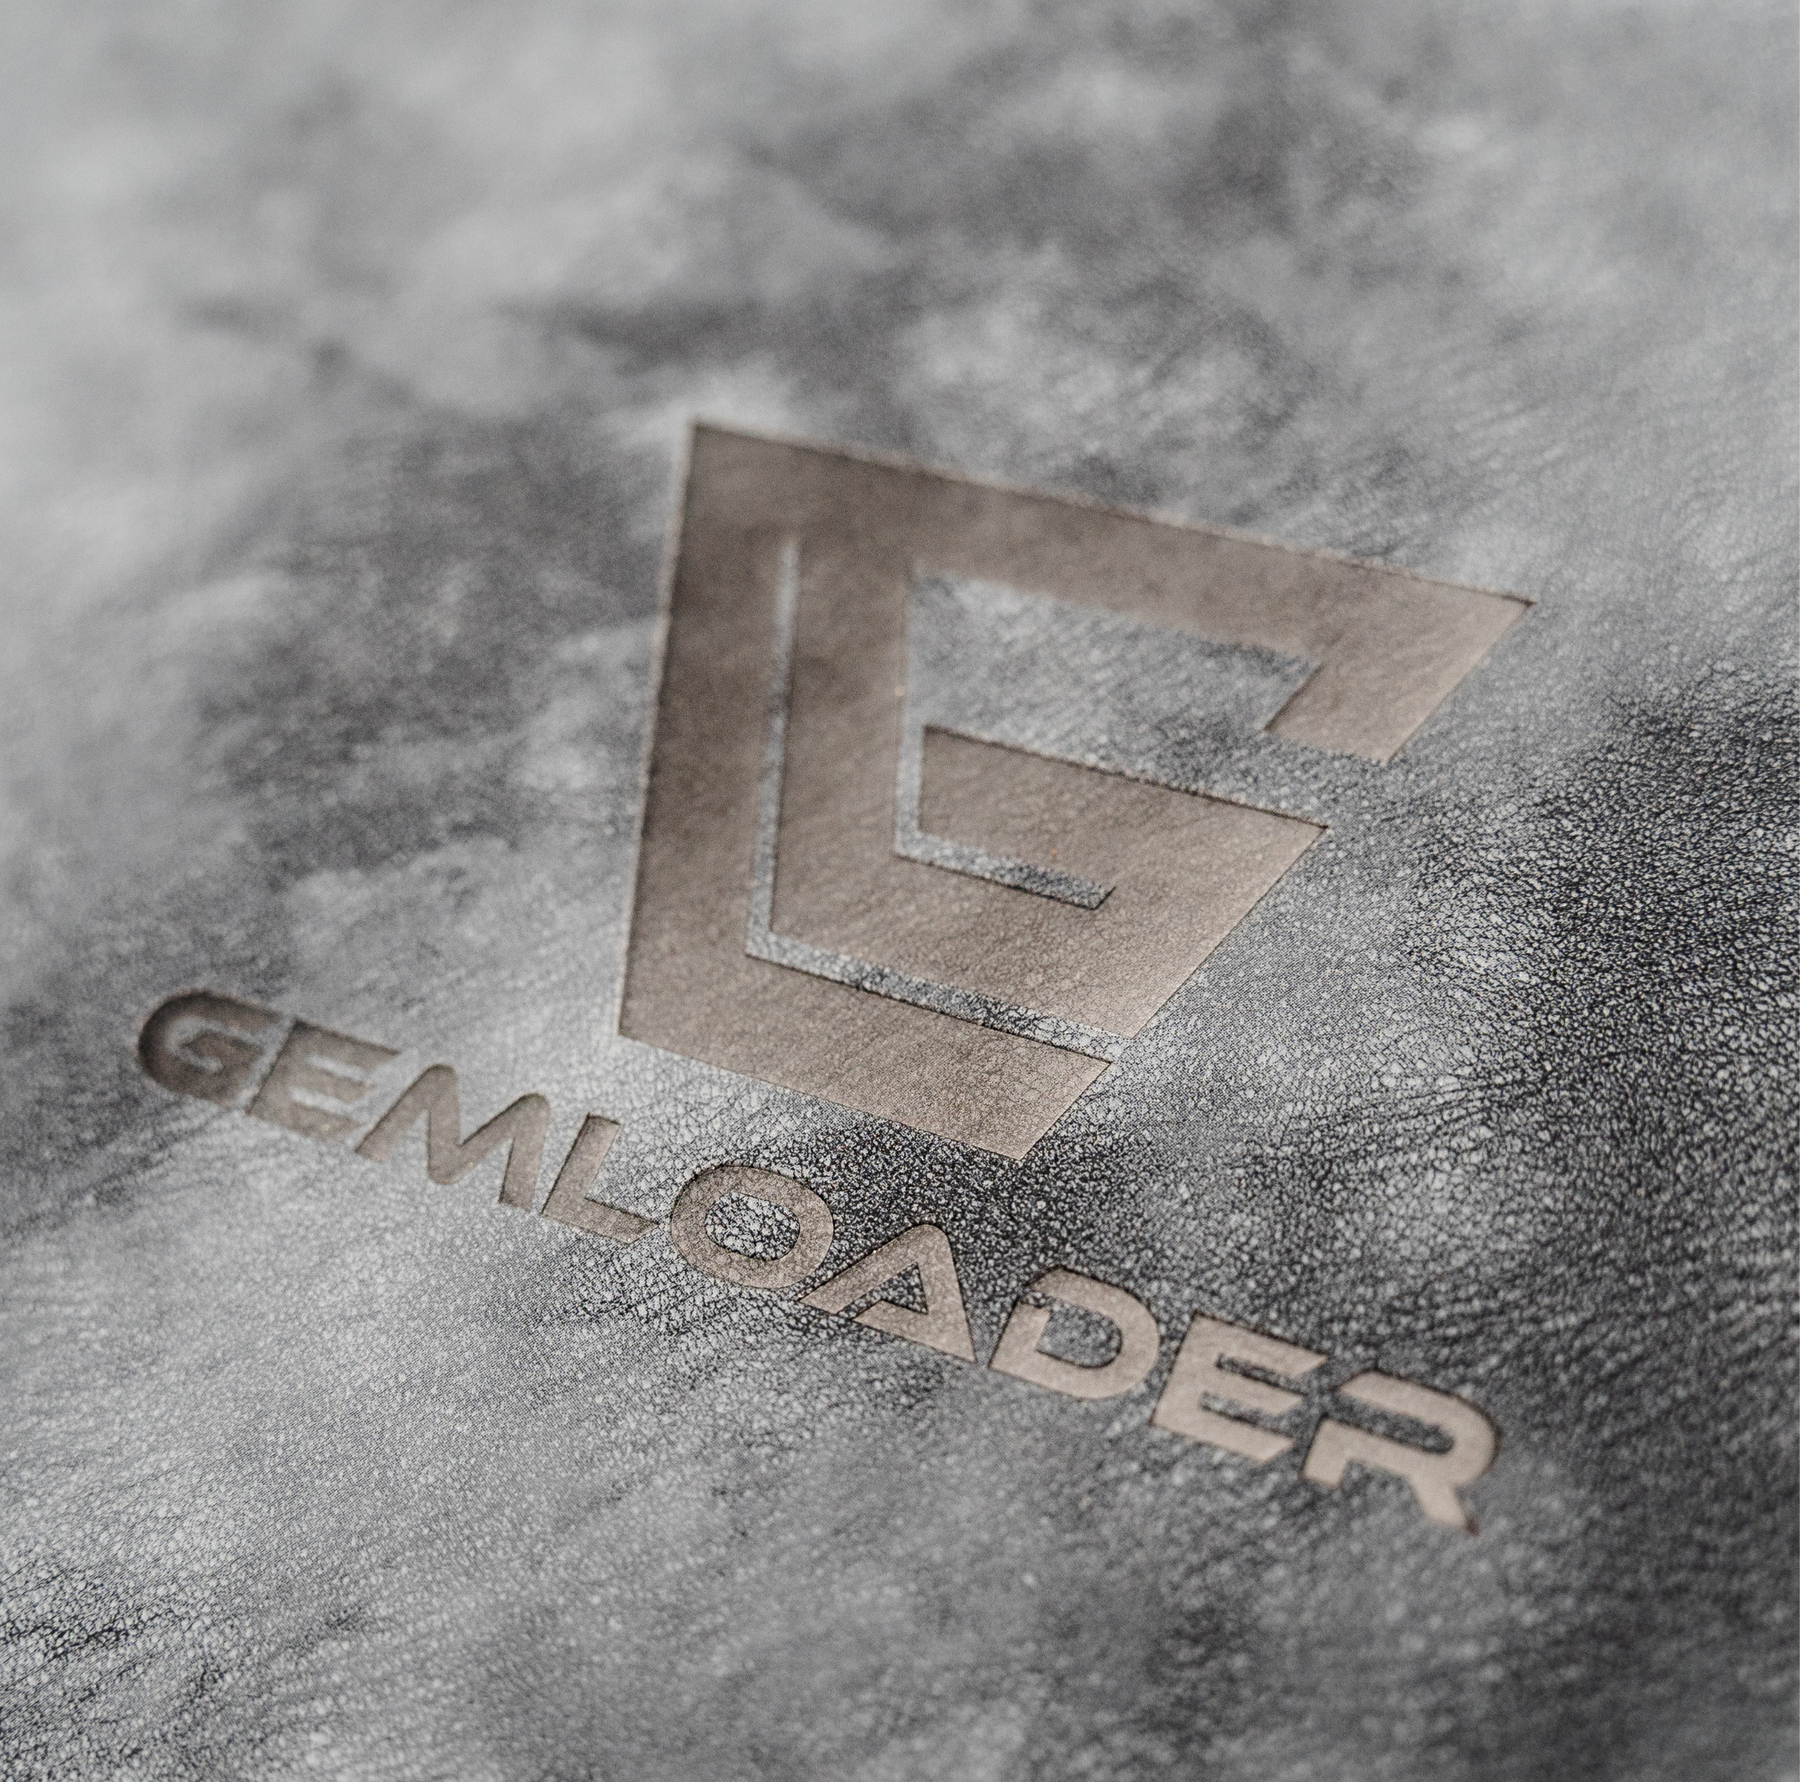 Gemloader - Premium 3''X4'' toploader fit collector's binder [216 pockets]  - Black / Noir – Les Dés masKés